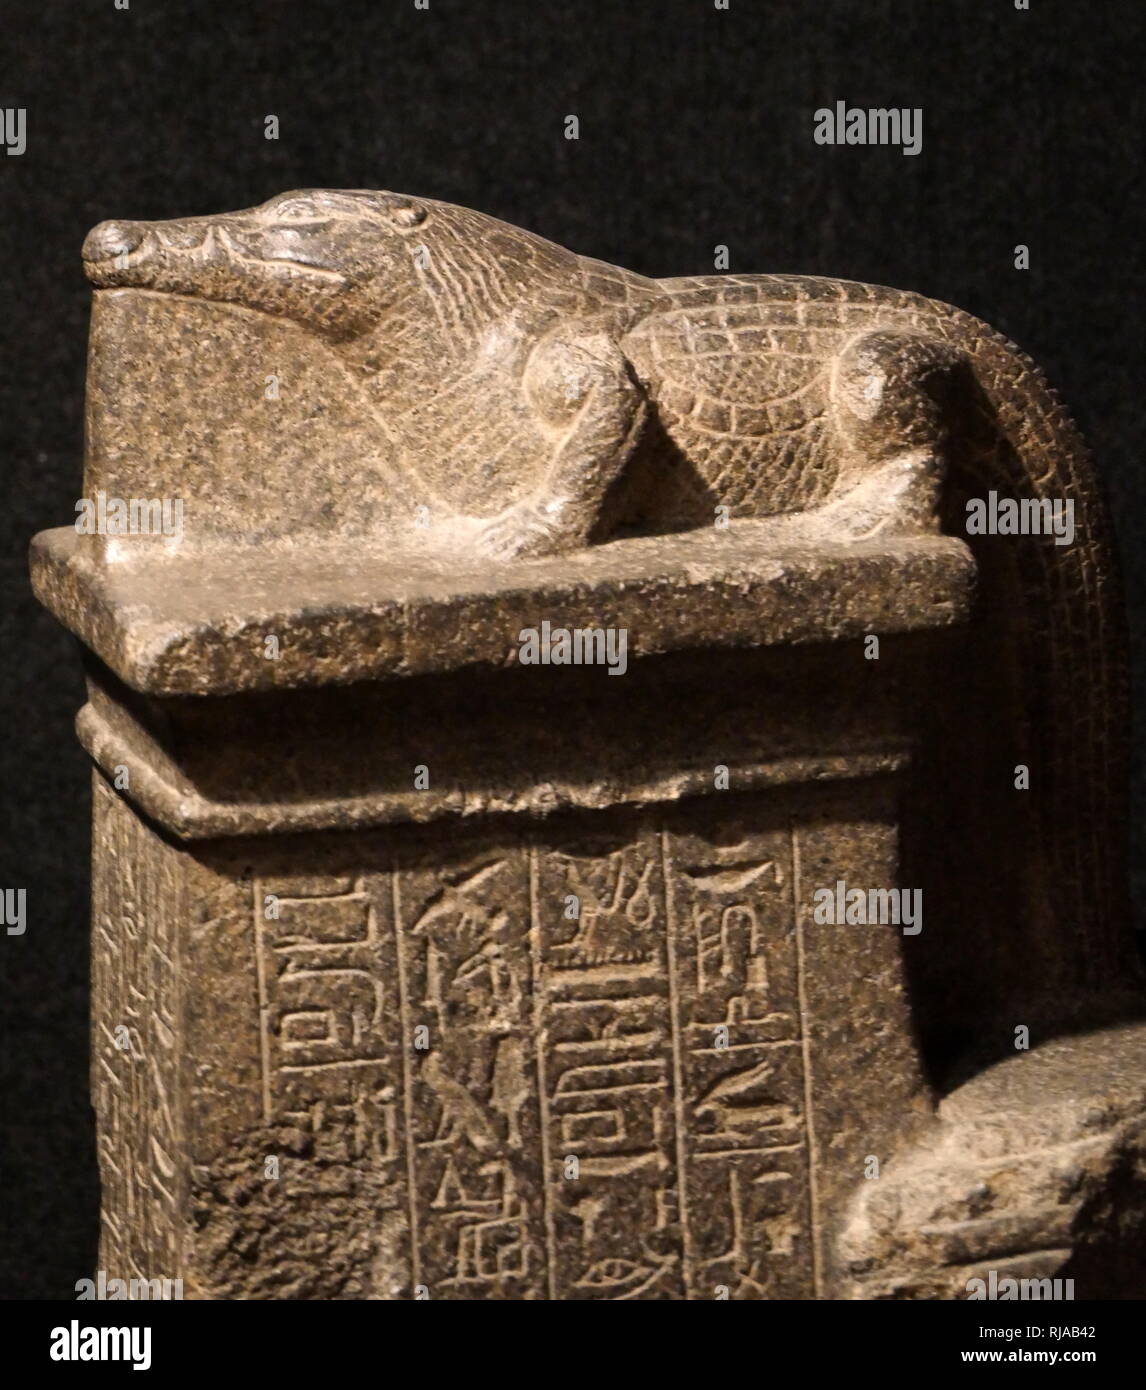 Statua votiva raffigurante il dio coccodrillo Sobek. Nuovo Regno. Sobek era un dio del Nilo che ha portato la fertilità alla terra. Il nuovo Regno d'Egitto, a cui si fa riferimento anche come Impero Egiziano, è il periodo della storia egizia tra il XVI secolo A.C. e il XI secolo A.C. Foto Stock